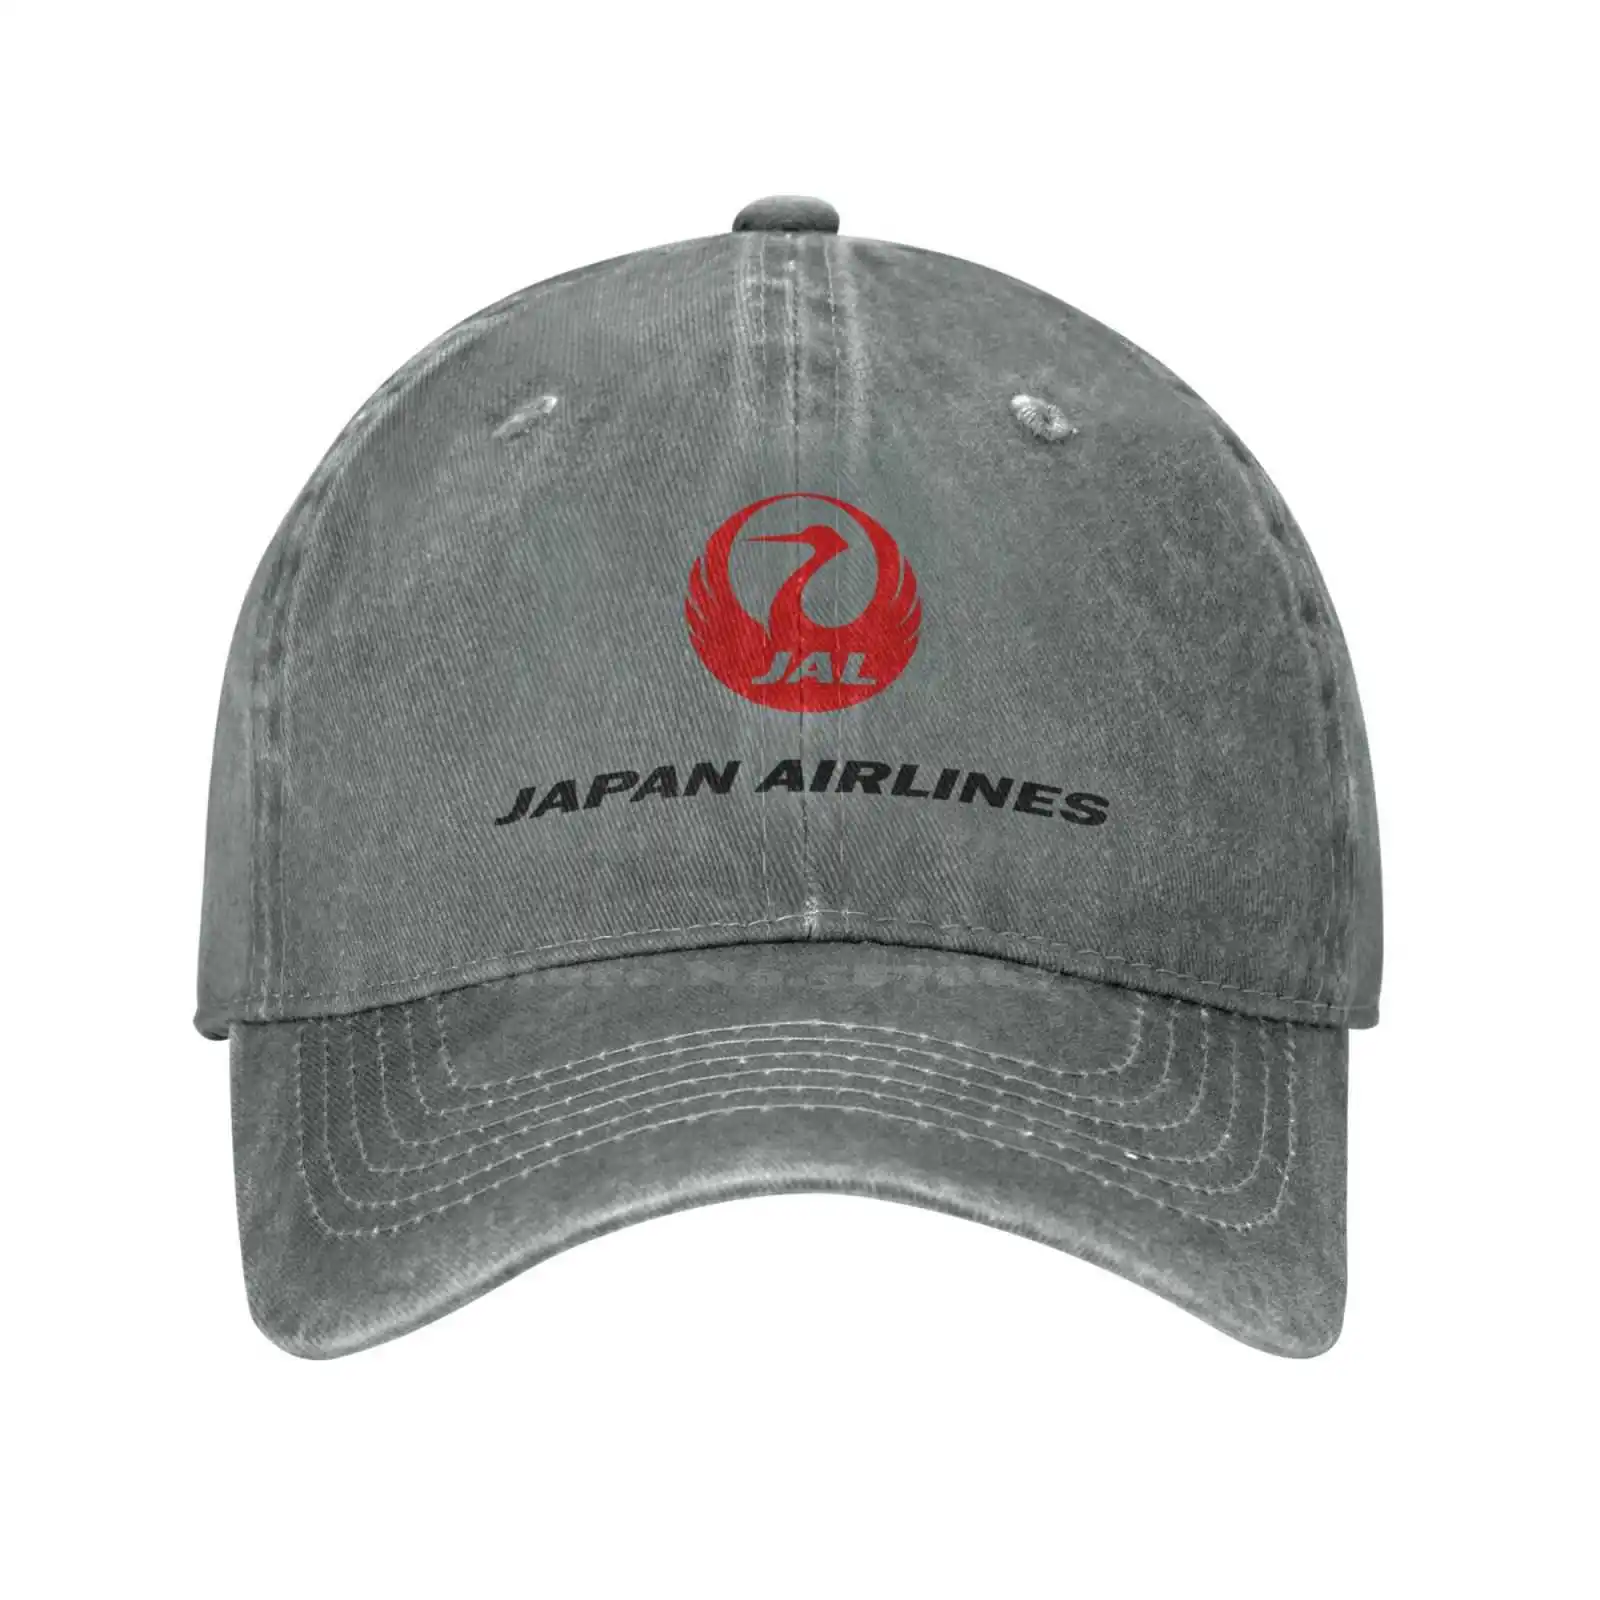 

Джинсовая бейсбольная кепка высшего качества с логотипом японских авиакомпаний